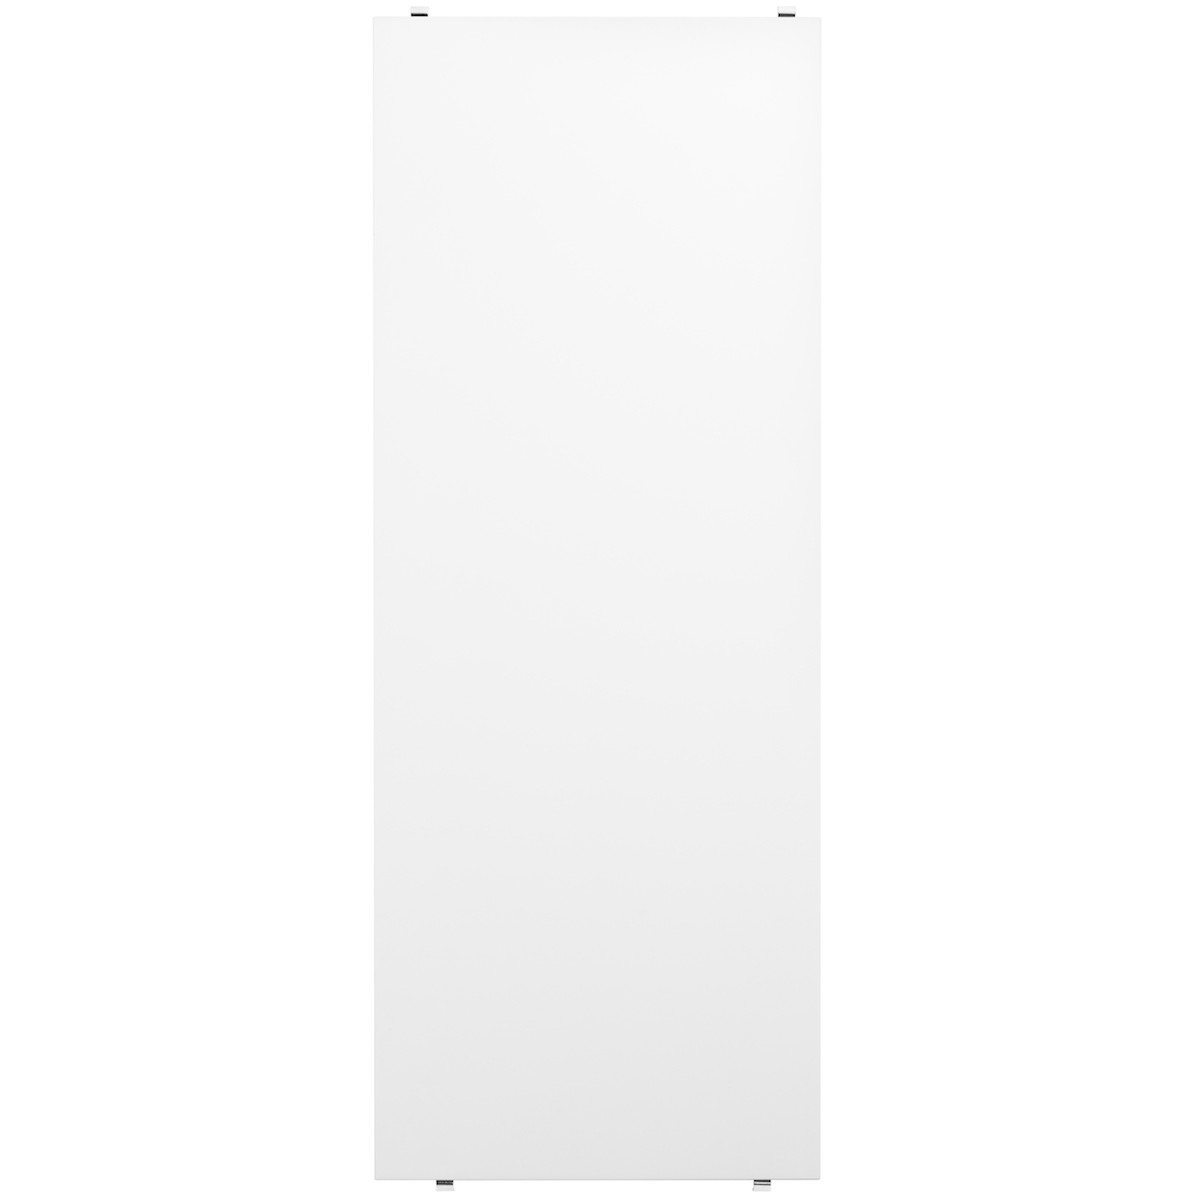 78x30cm - 3 étagères - Blanc